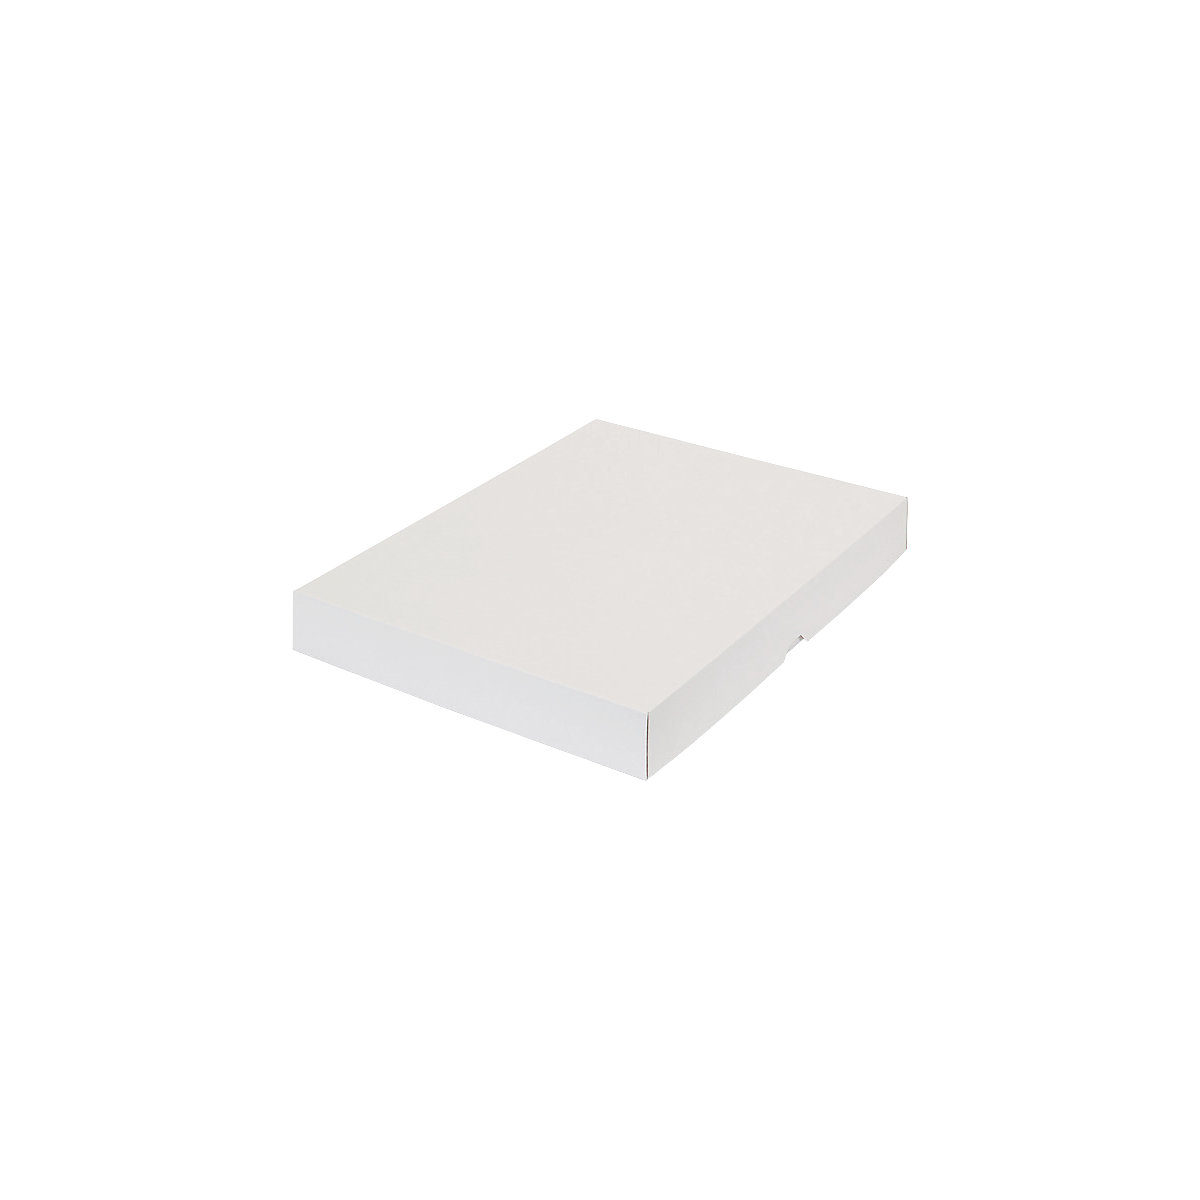 Stülpdeckelkarton, braun, Innenmaße 435 x 315 x 50 mm, A3, weiß, ab 10 Stk